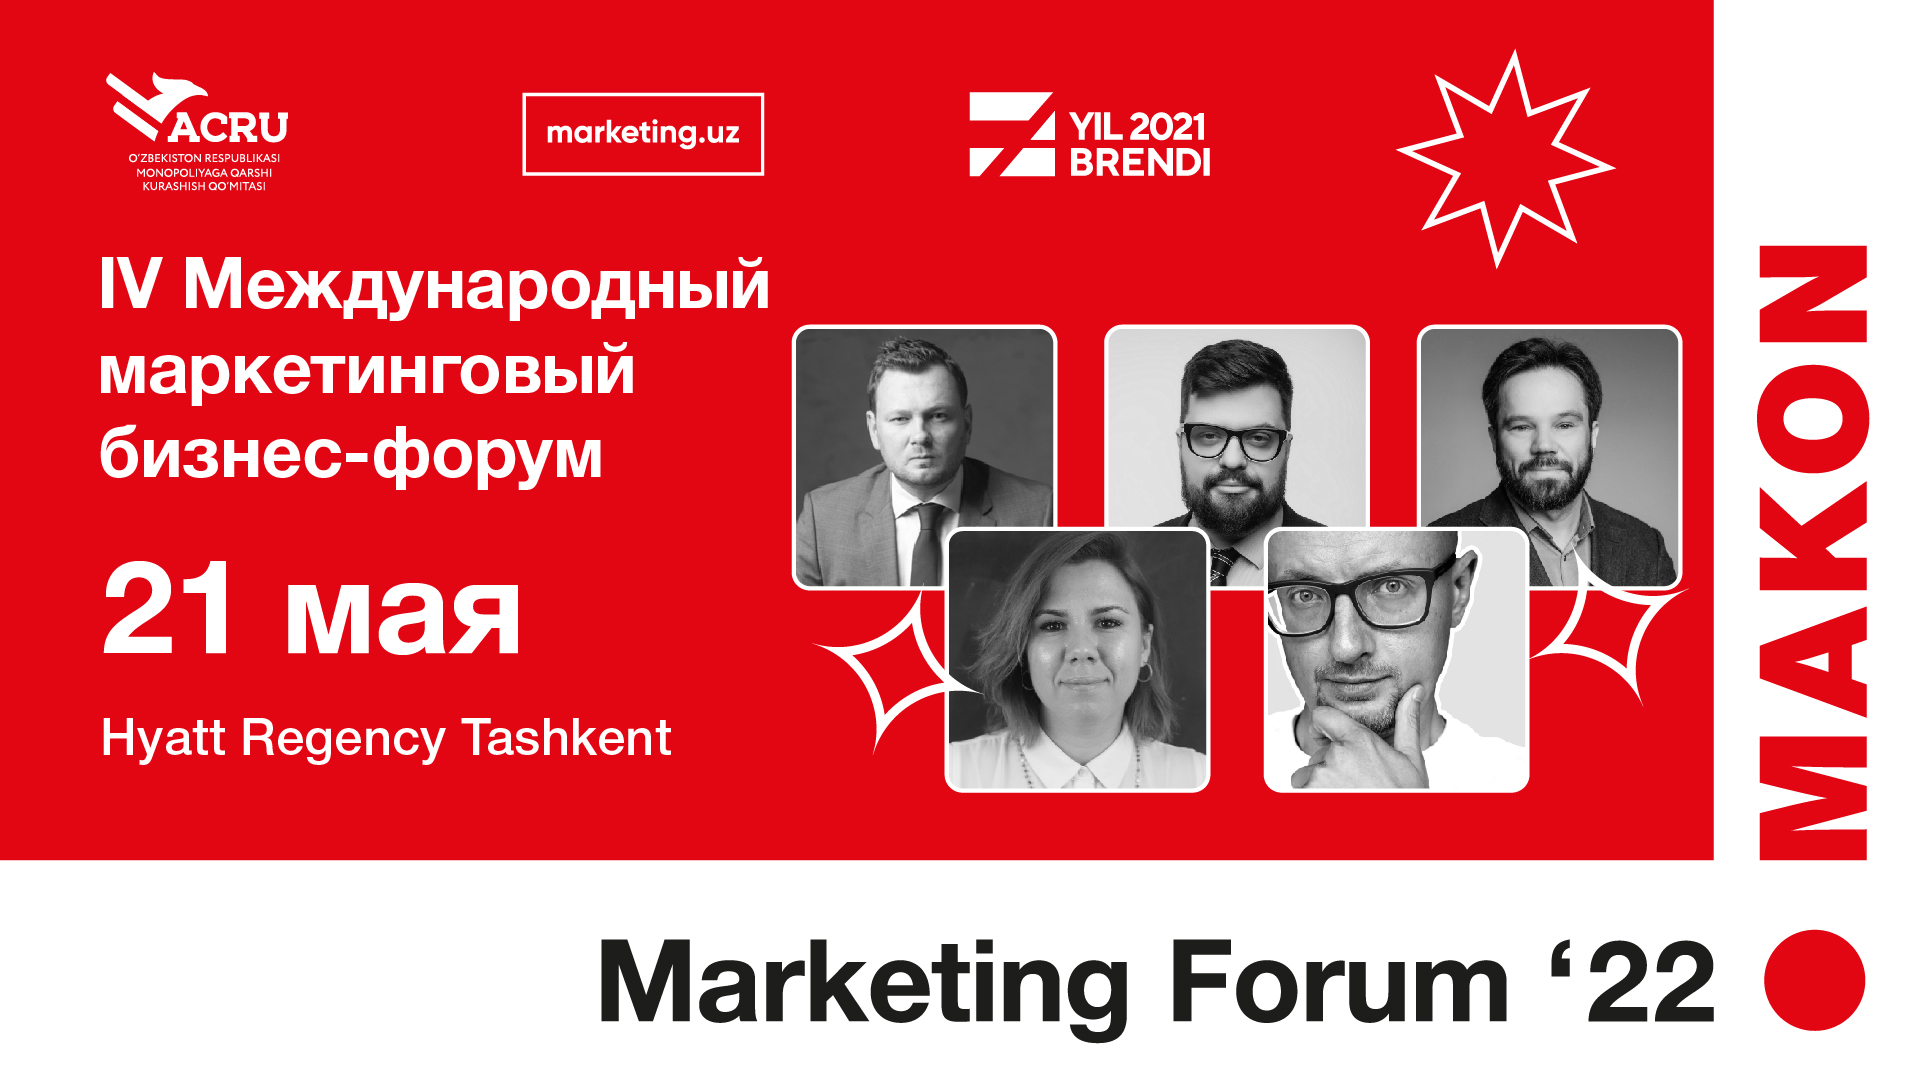 В Ташкенте пройдет четвертый международный маркетинговый бизнес-форум MAKON Marketing Forum 2022